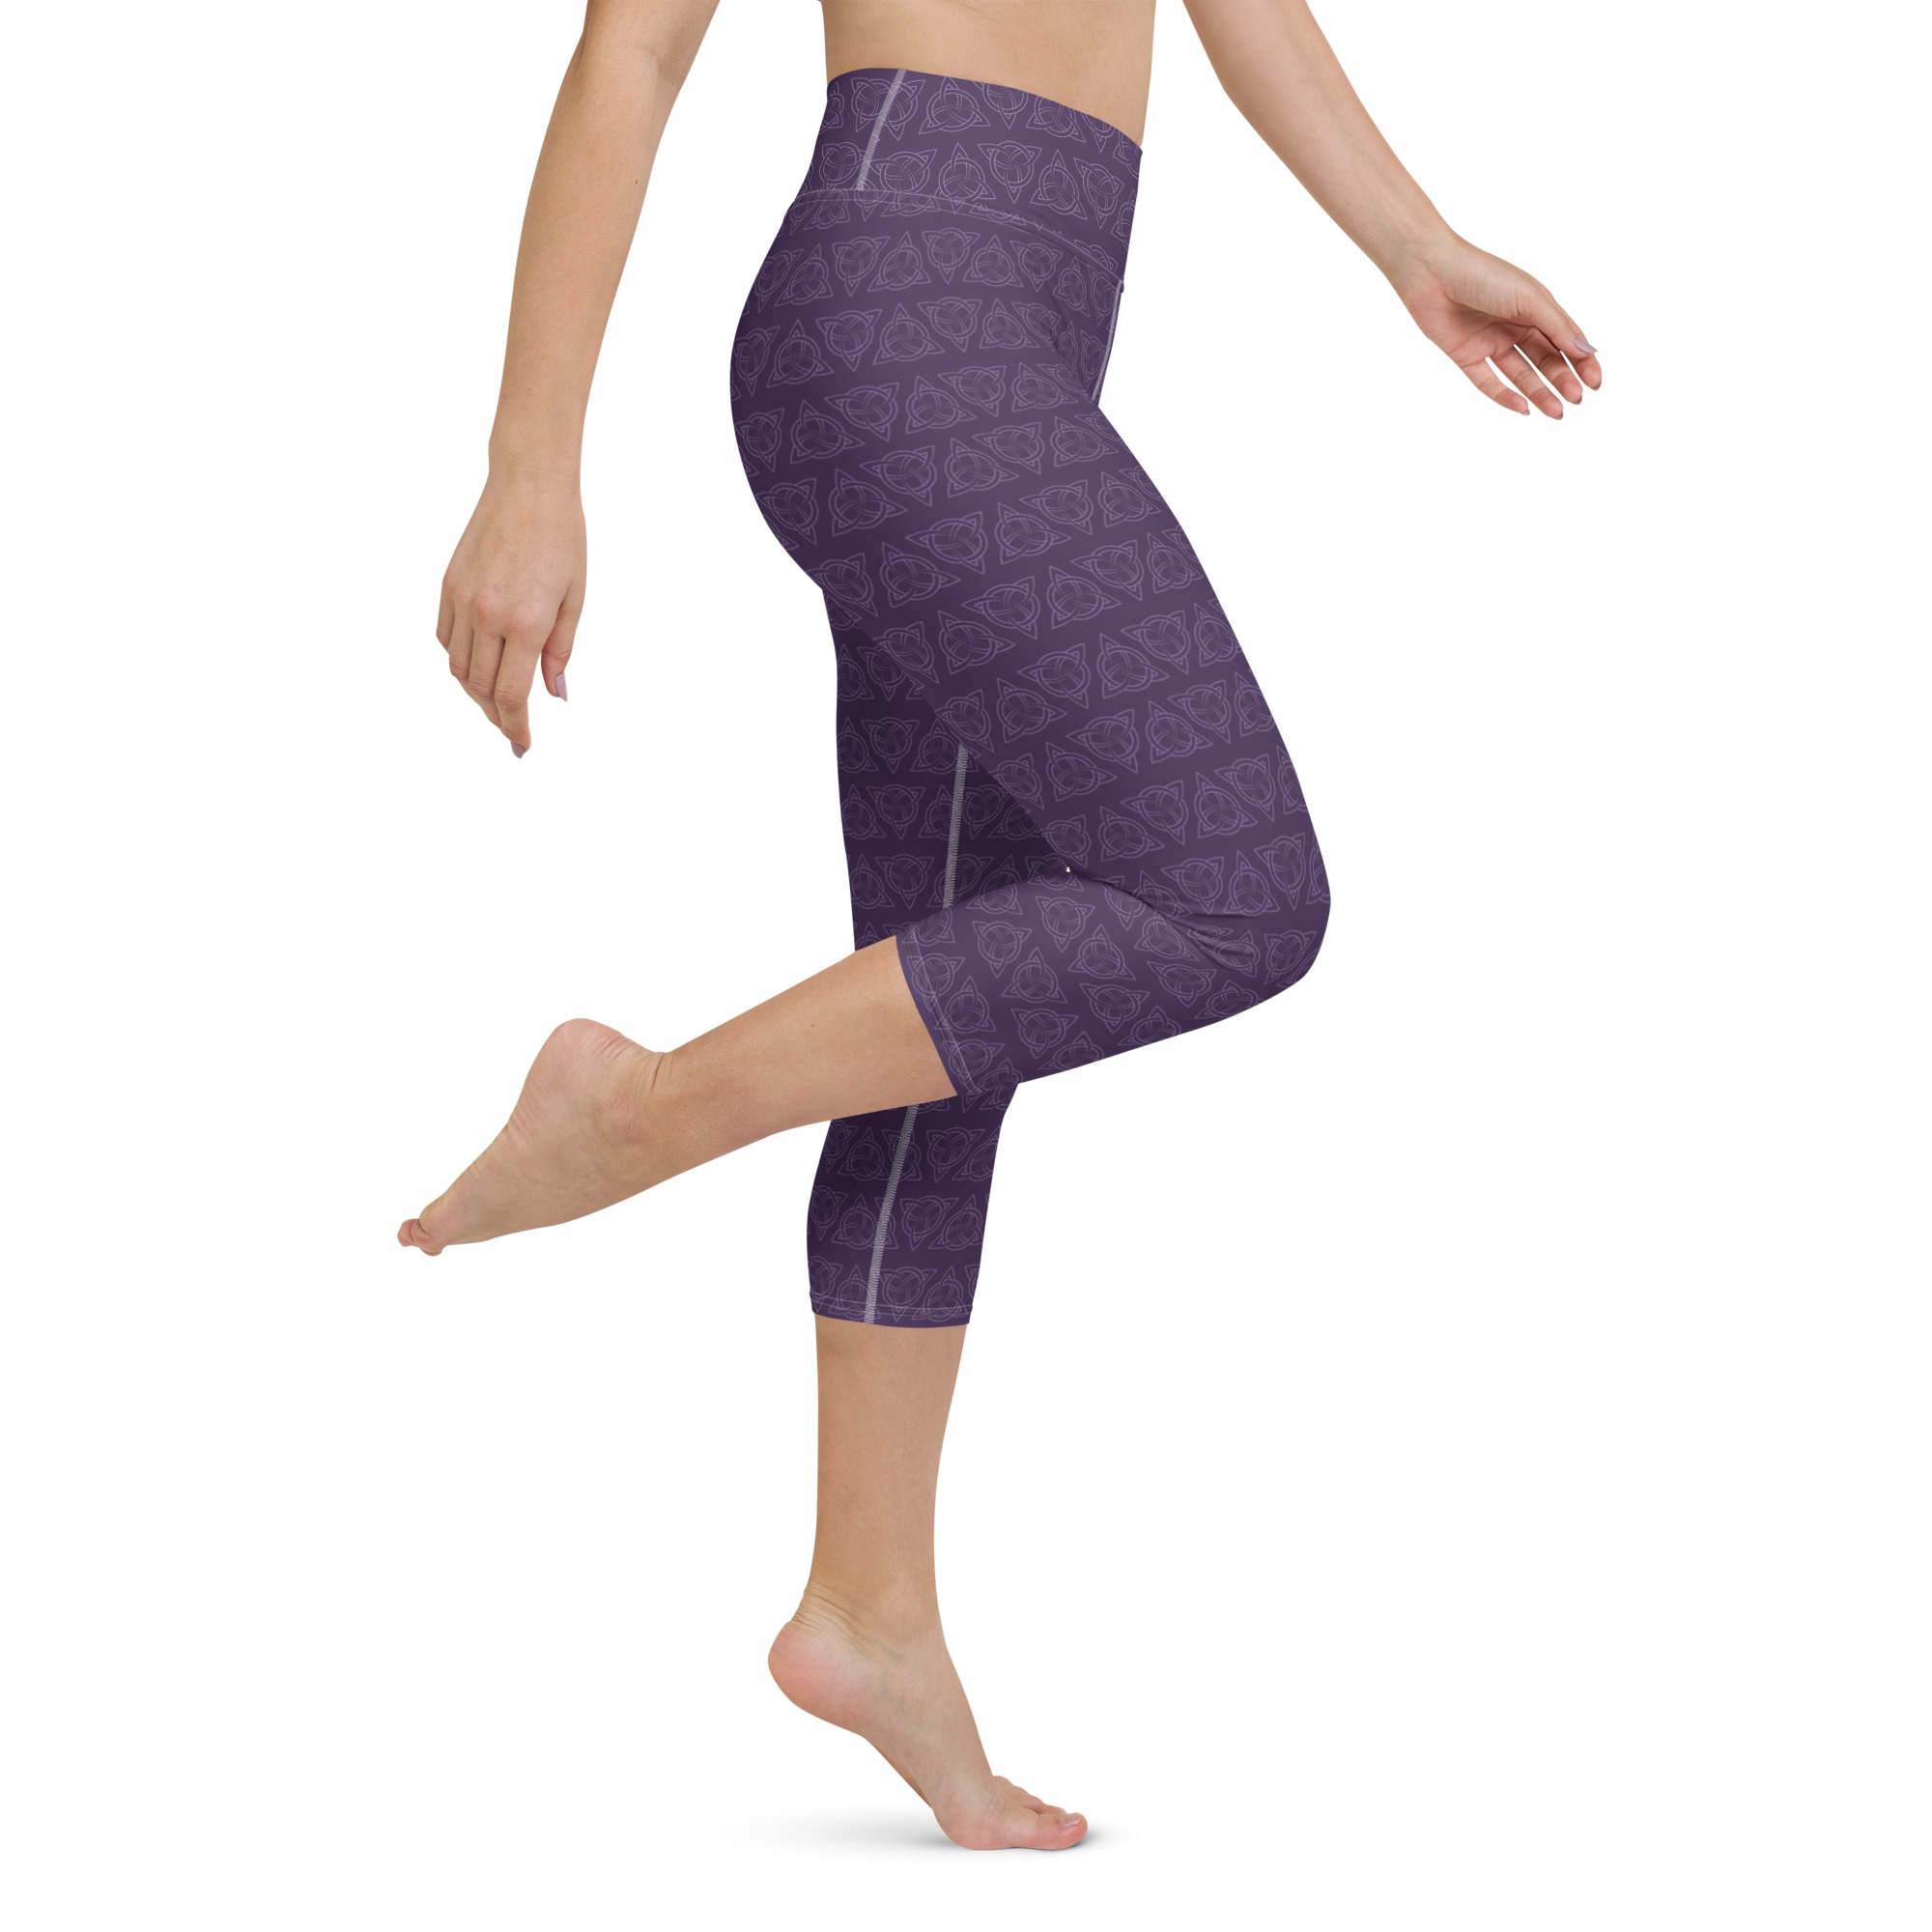 Purple Celtic Triquetra Yoga Capri Leggings